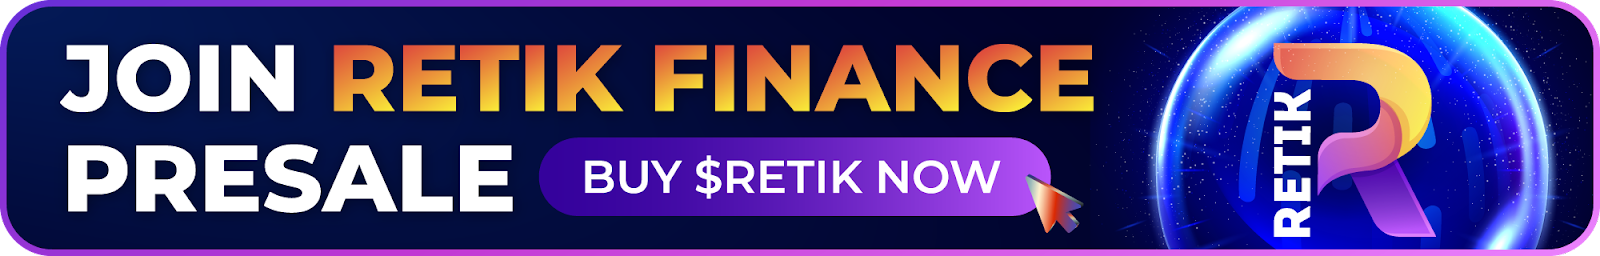 Превратите 2000 долларов в 500,000 XNUMX долларов с помощью Retik Finance (RETIK), Shiba Inu (SHIB) и Solana (SOL)